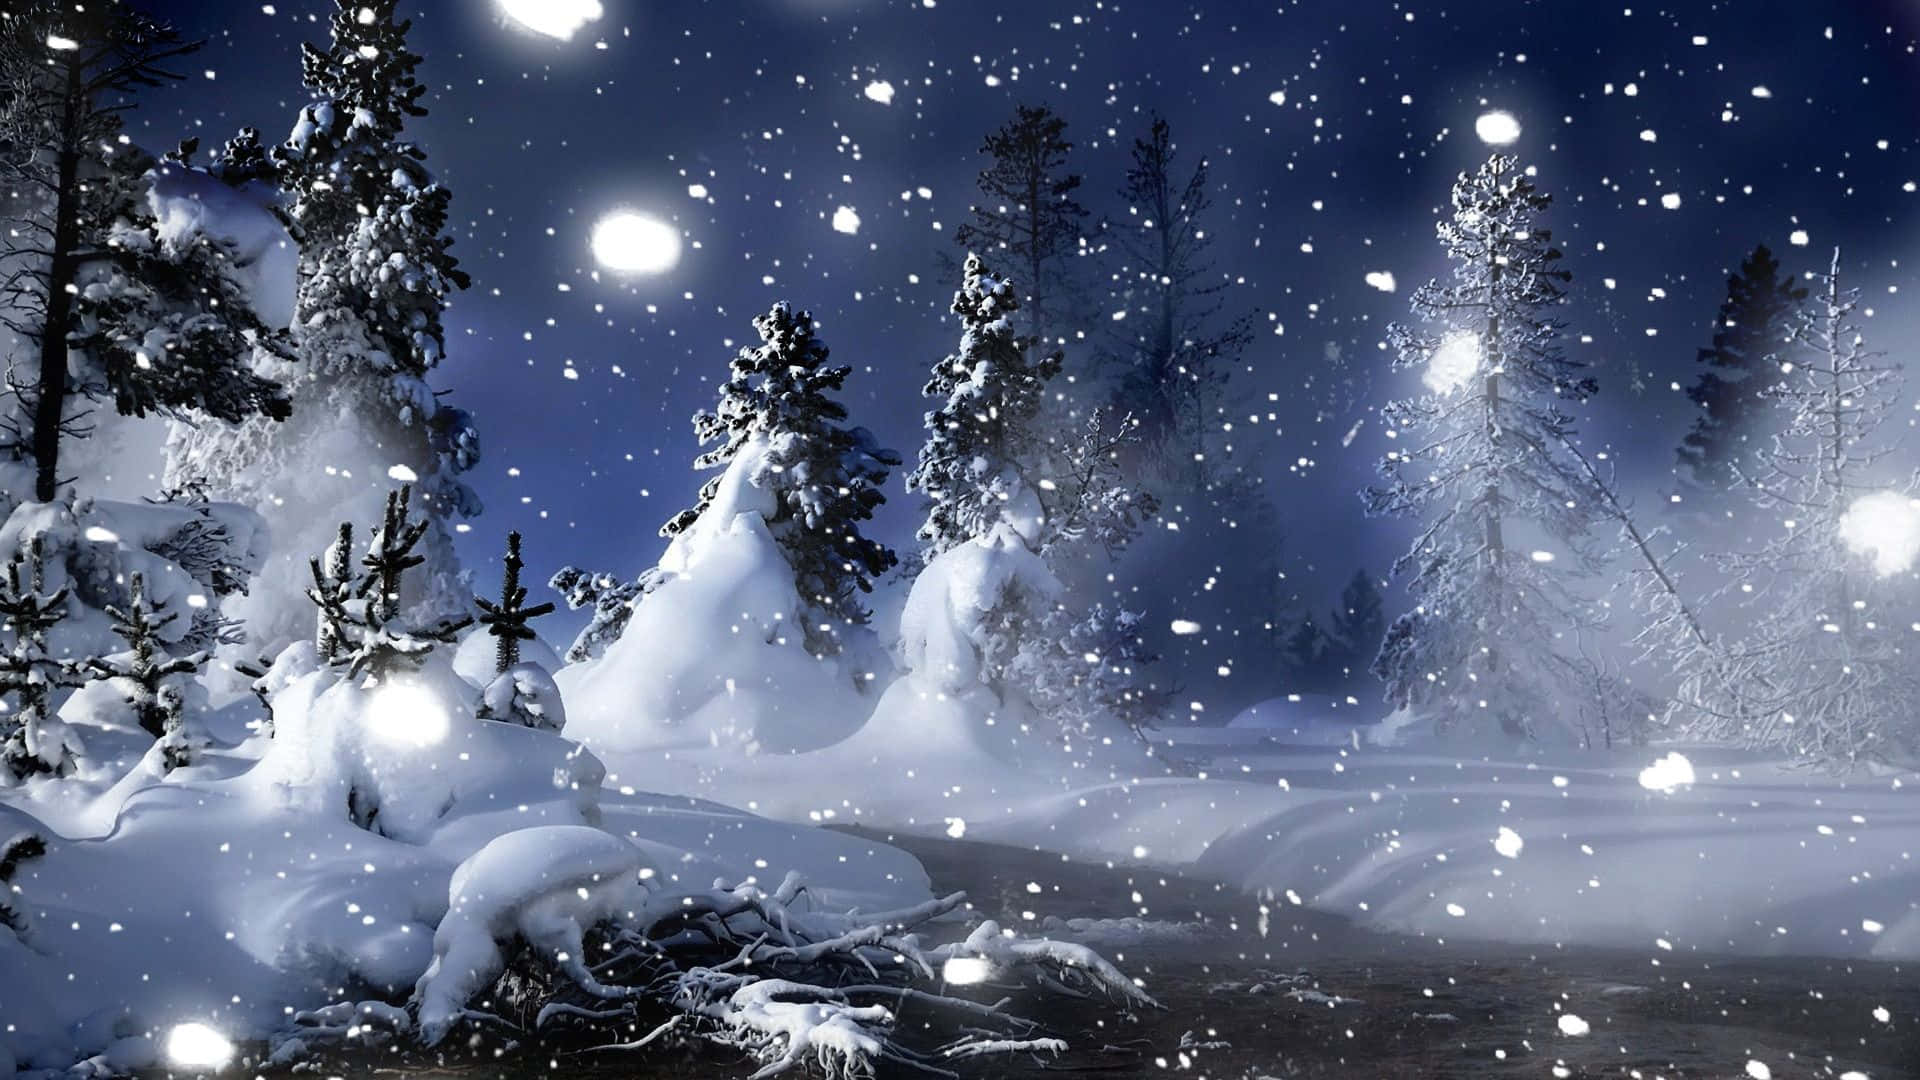 Apaisagem Mágica E Gelada Do Natal Lança Um Feitiço De Maravilha De Inverno. Papel de Parede